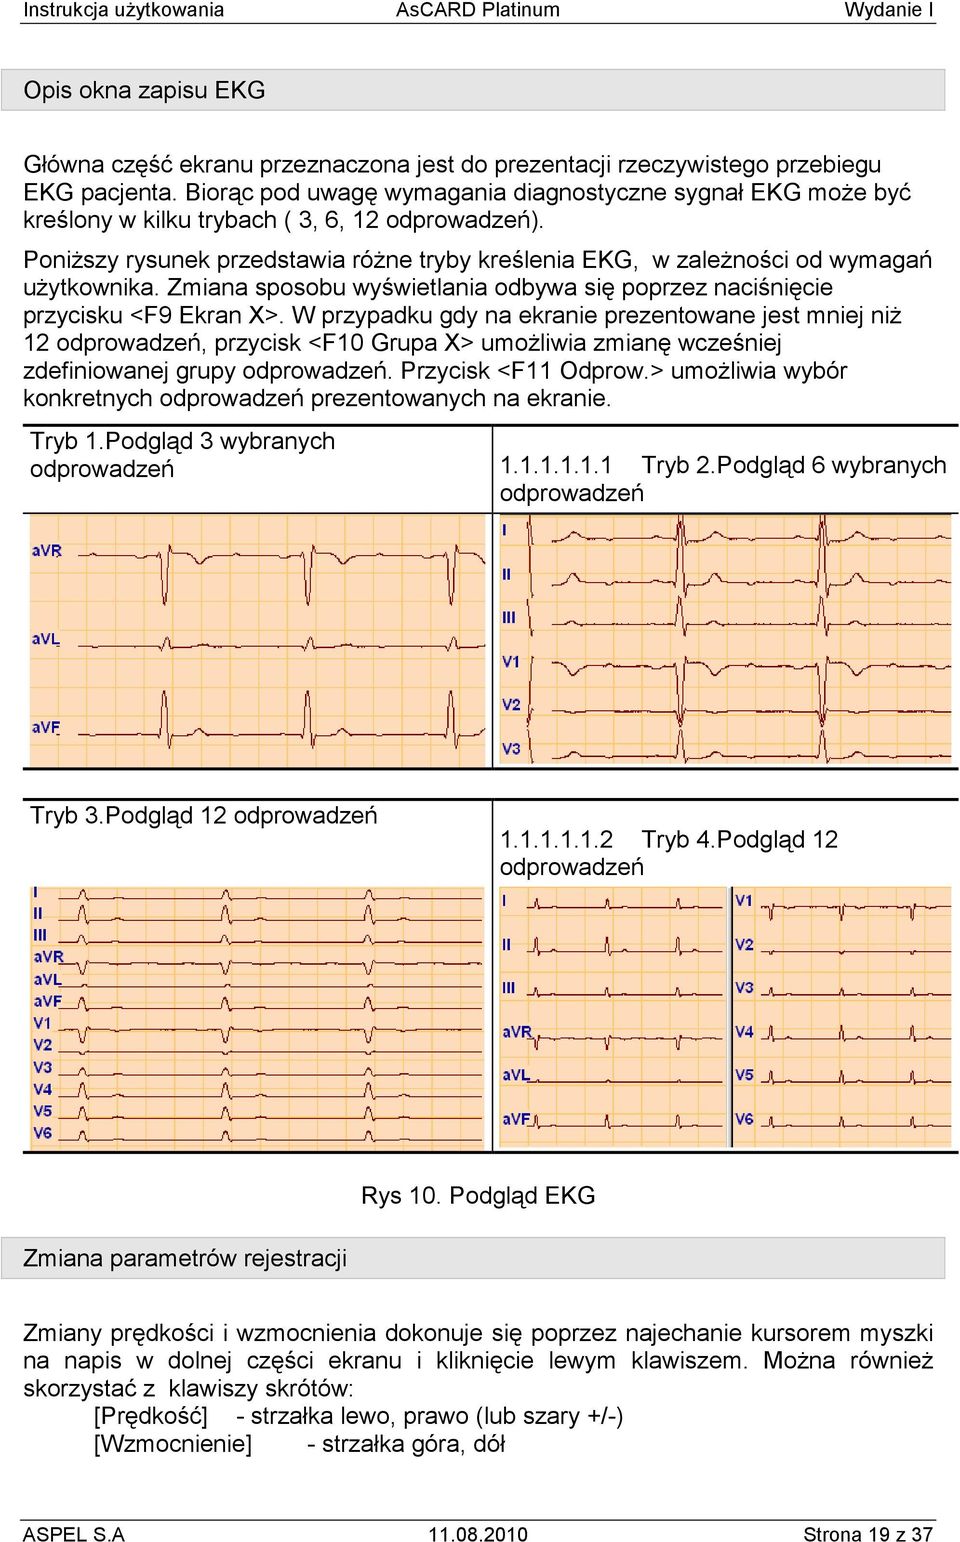 PoniŜszy rysunek przedstawia róŝne tryby kreślenia EKG, w zaleŝności od wymagań uŝytkownika. Zmiana sposobu wyświetlania odbywa się poprzez naciśnięcie przycisku <F9 Ekran X>.